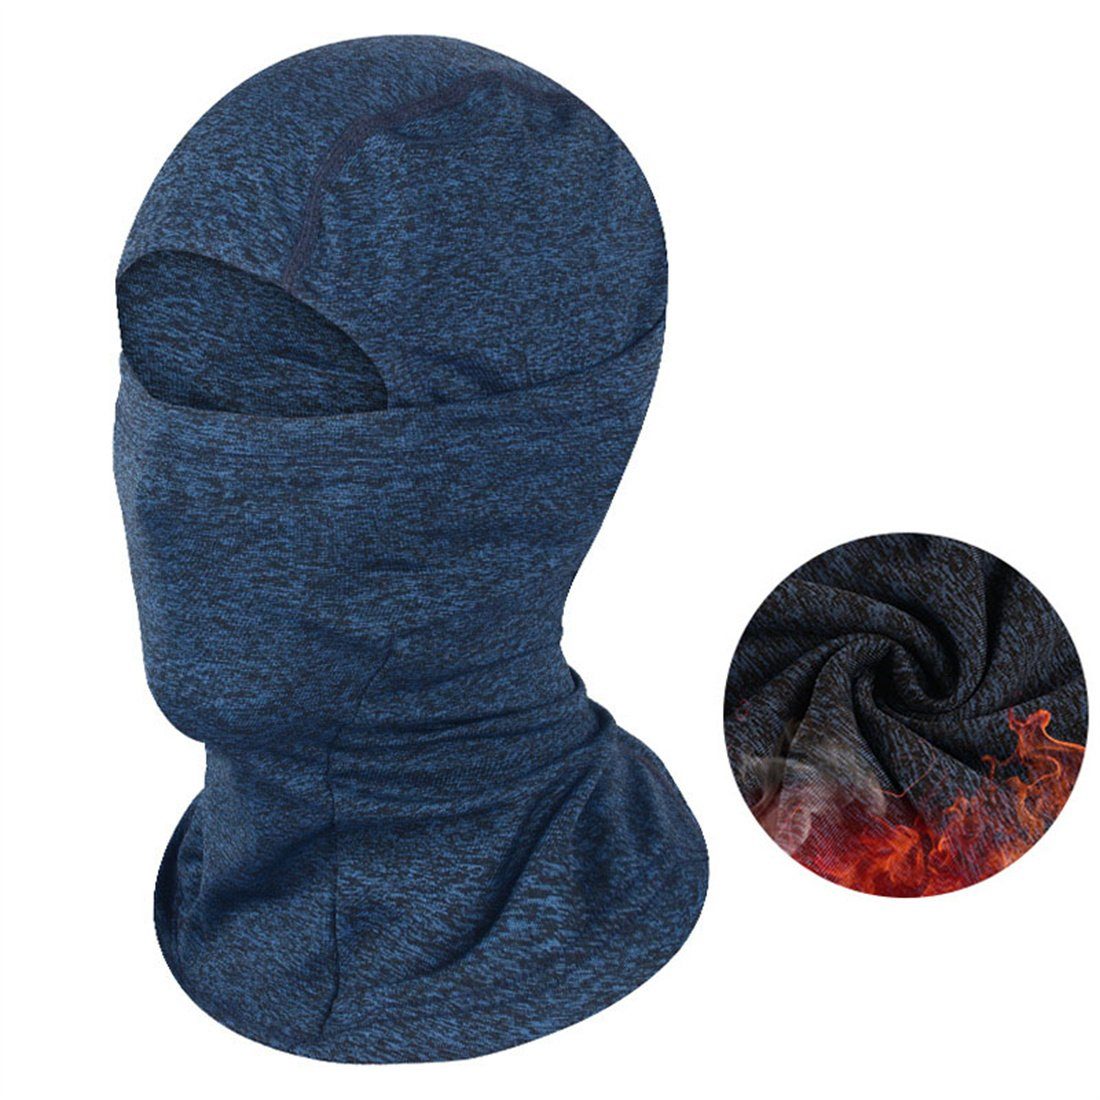 Reiten Winter Kopfbedeckung, Warm blau Outdoor Ski DÖRÖY Kälteschutz Sturmhaube Masken